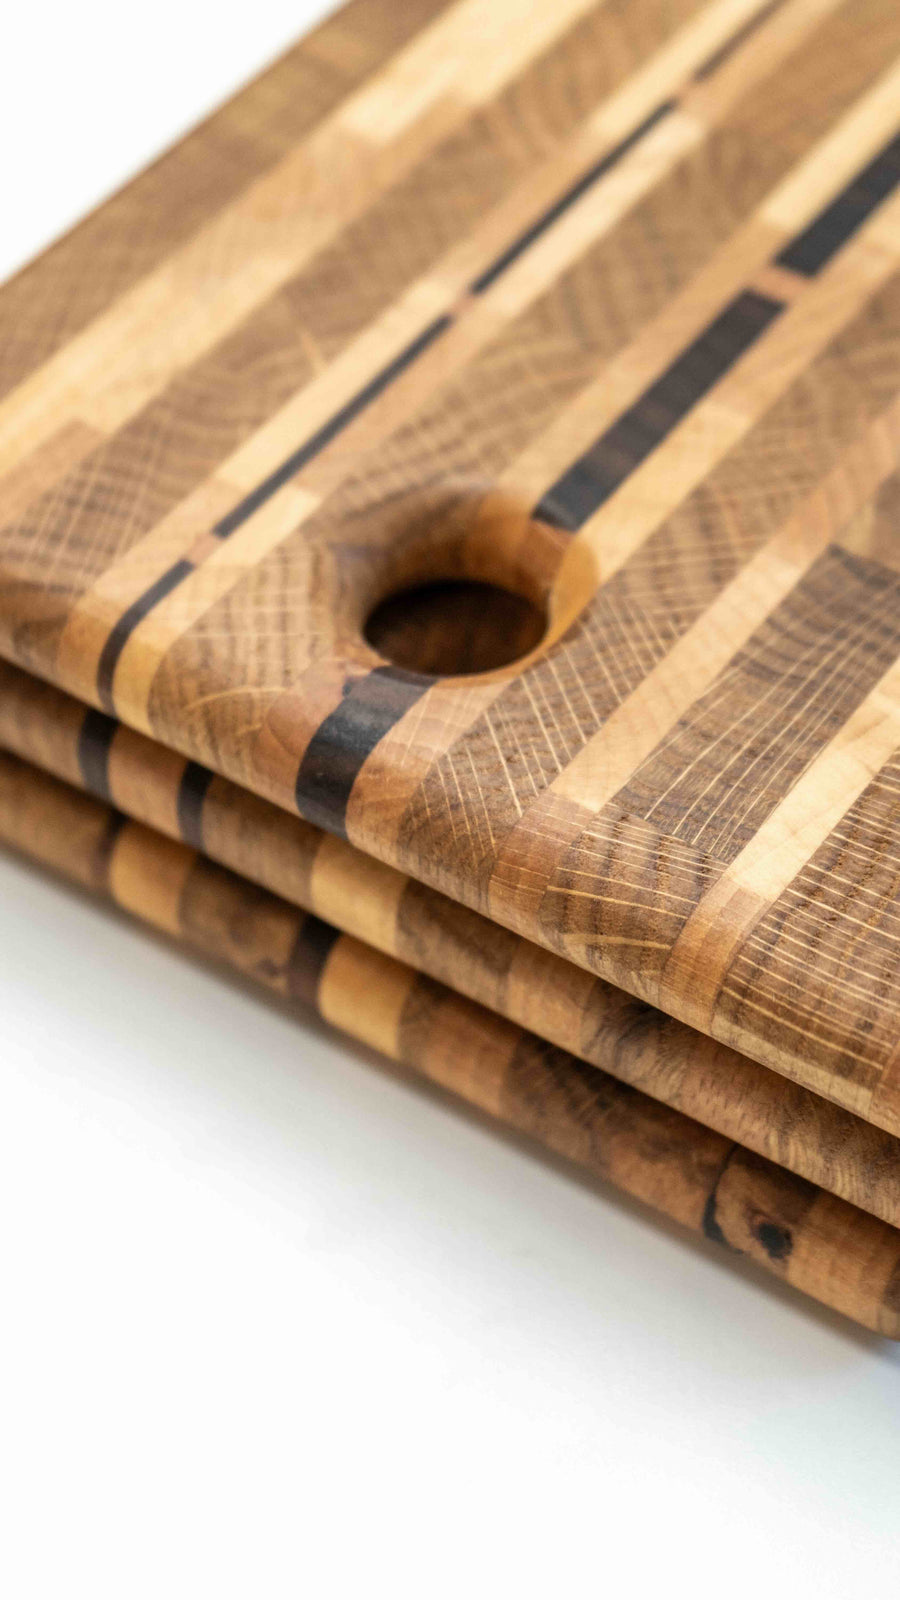 Ročno izdelana rezalna deska je sestavljena iz različnih vrst lesa. Z delovno površino približno 39 x 20 cm je ravno prave velikosti, da se prilega vsakemu pultu, tako doma kot v profesionalni kuhinji. "End grain" rezalne deske so zelo vzdržljive in poskrbijo, da je vaš nož dlje časa oster.